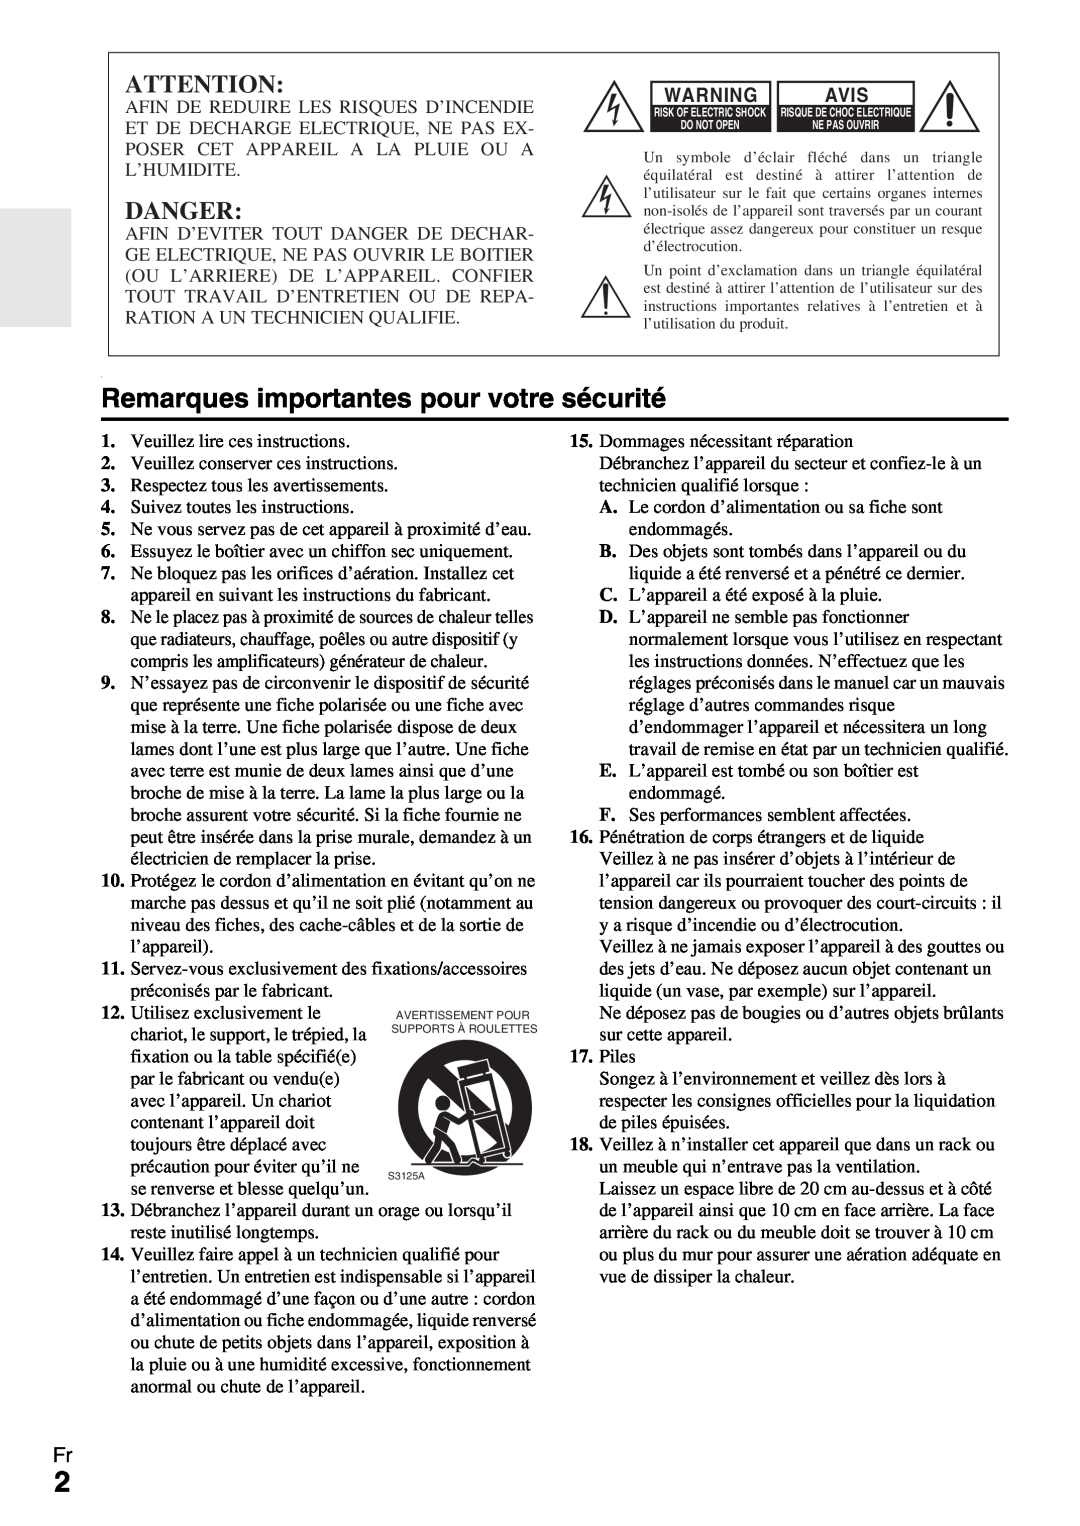 Onkyo HT-R990 instruction manual Remarques importantes pour votre sécurité, Danger, Avis 